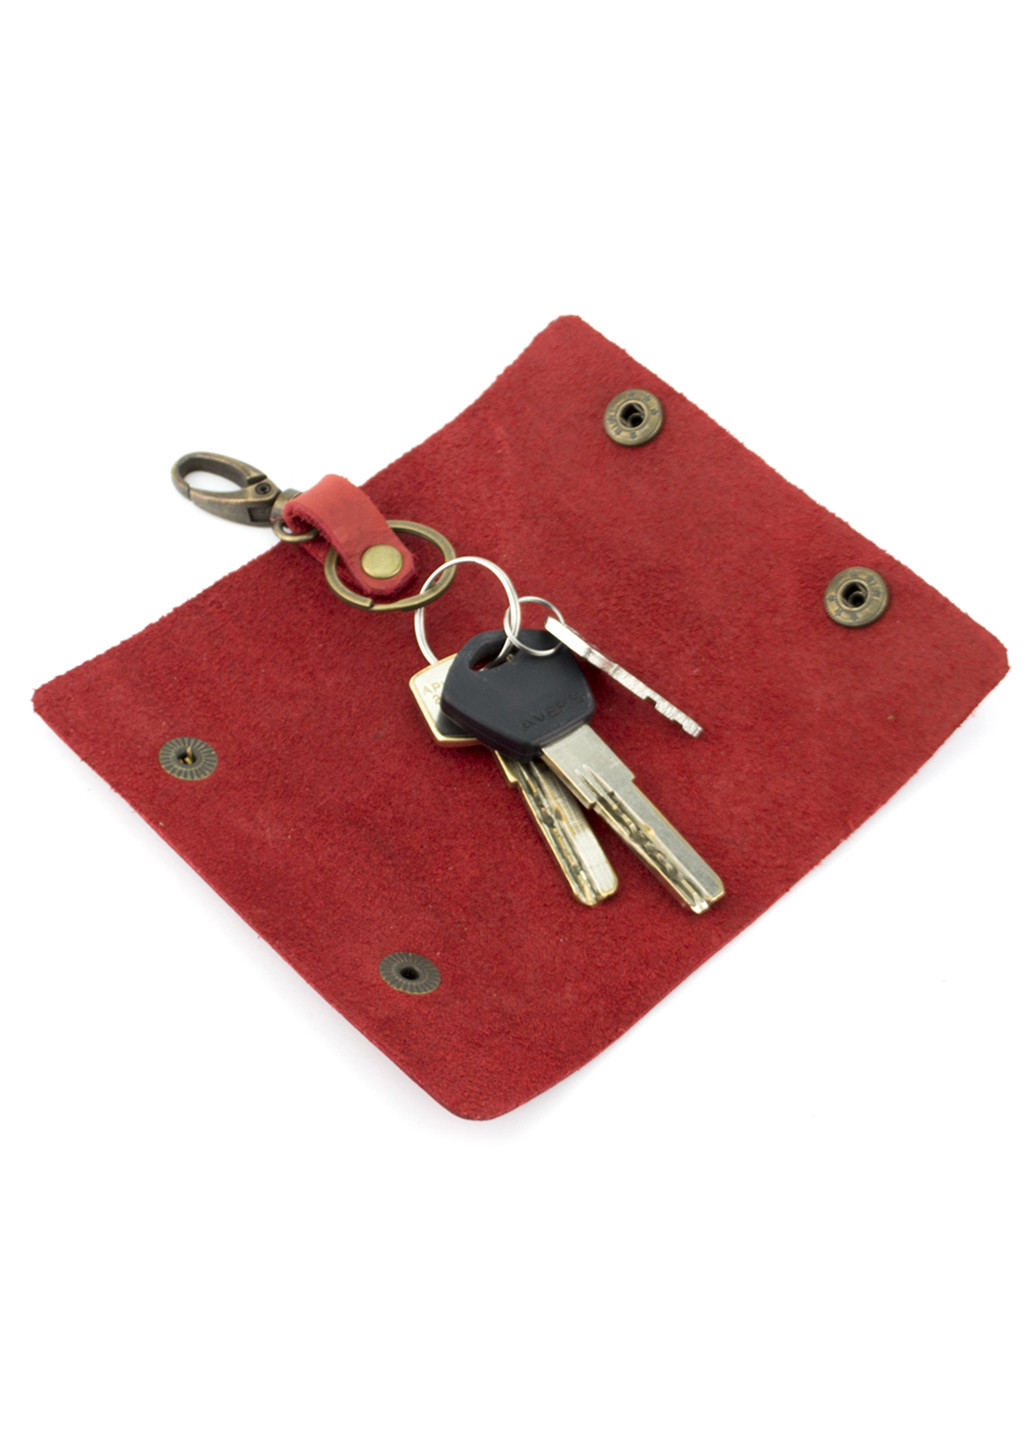 Женский подарочный набор №45 красный (кошелек, обложка, ключница) в коробке HandyCover (206521418)